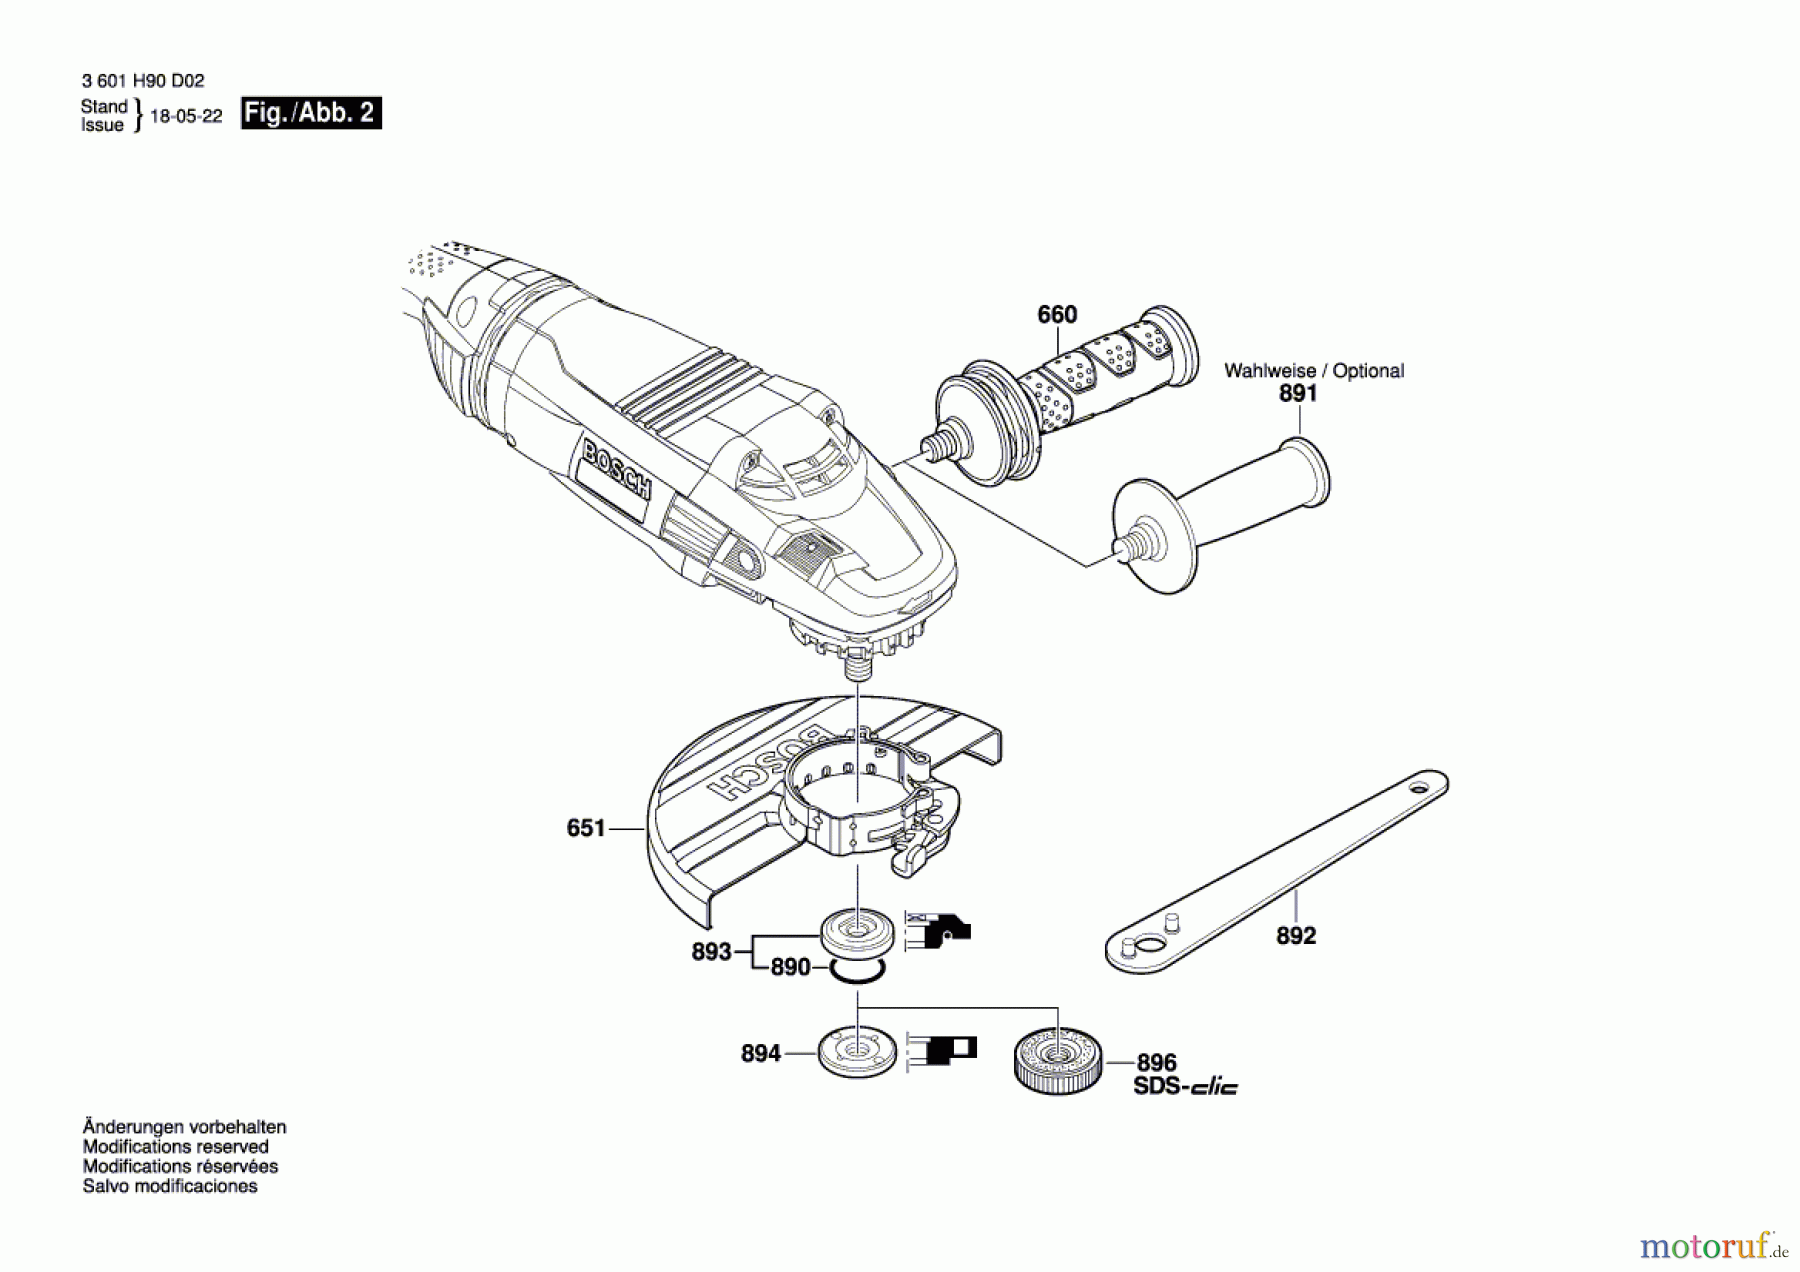  Bosch Werkzeug Winkelschleifer GWS 22-230 LVI Seite 2